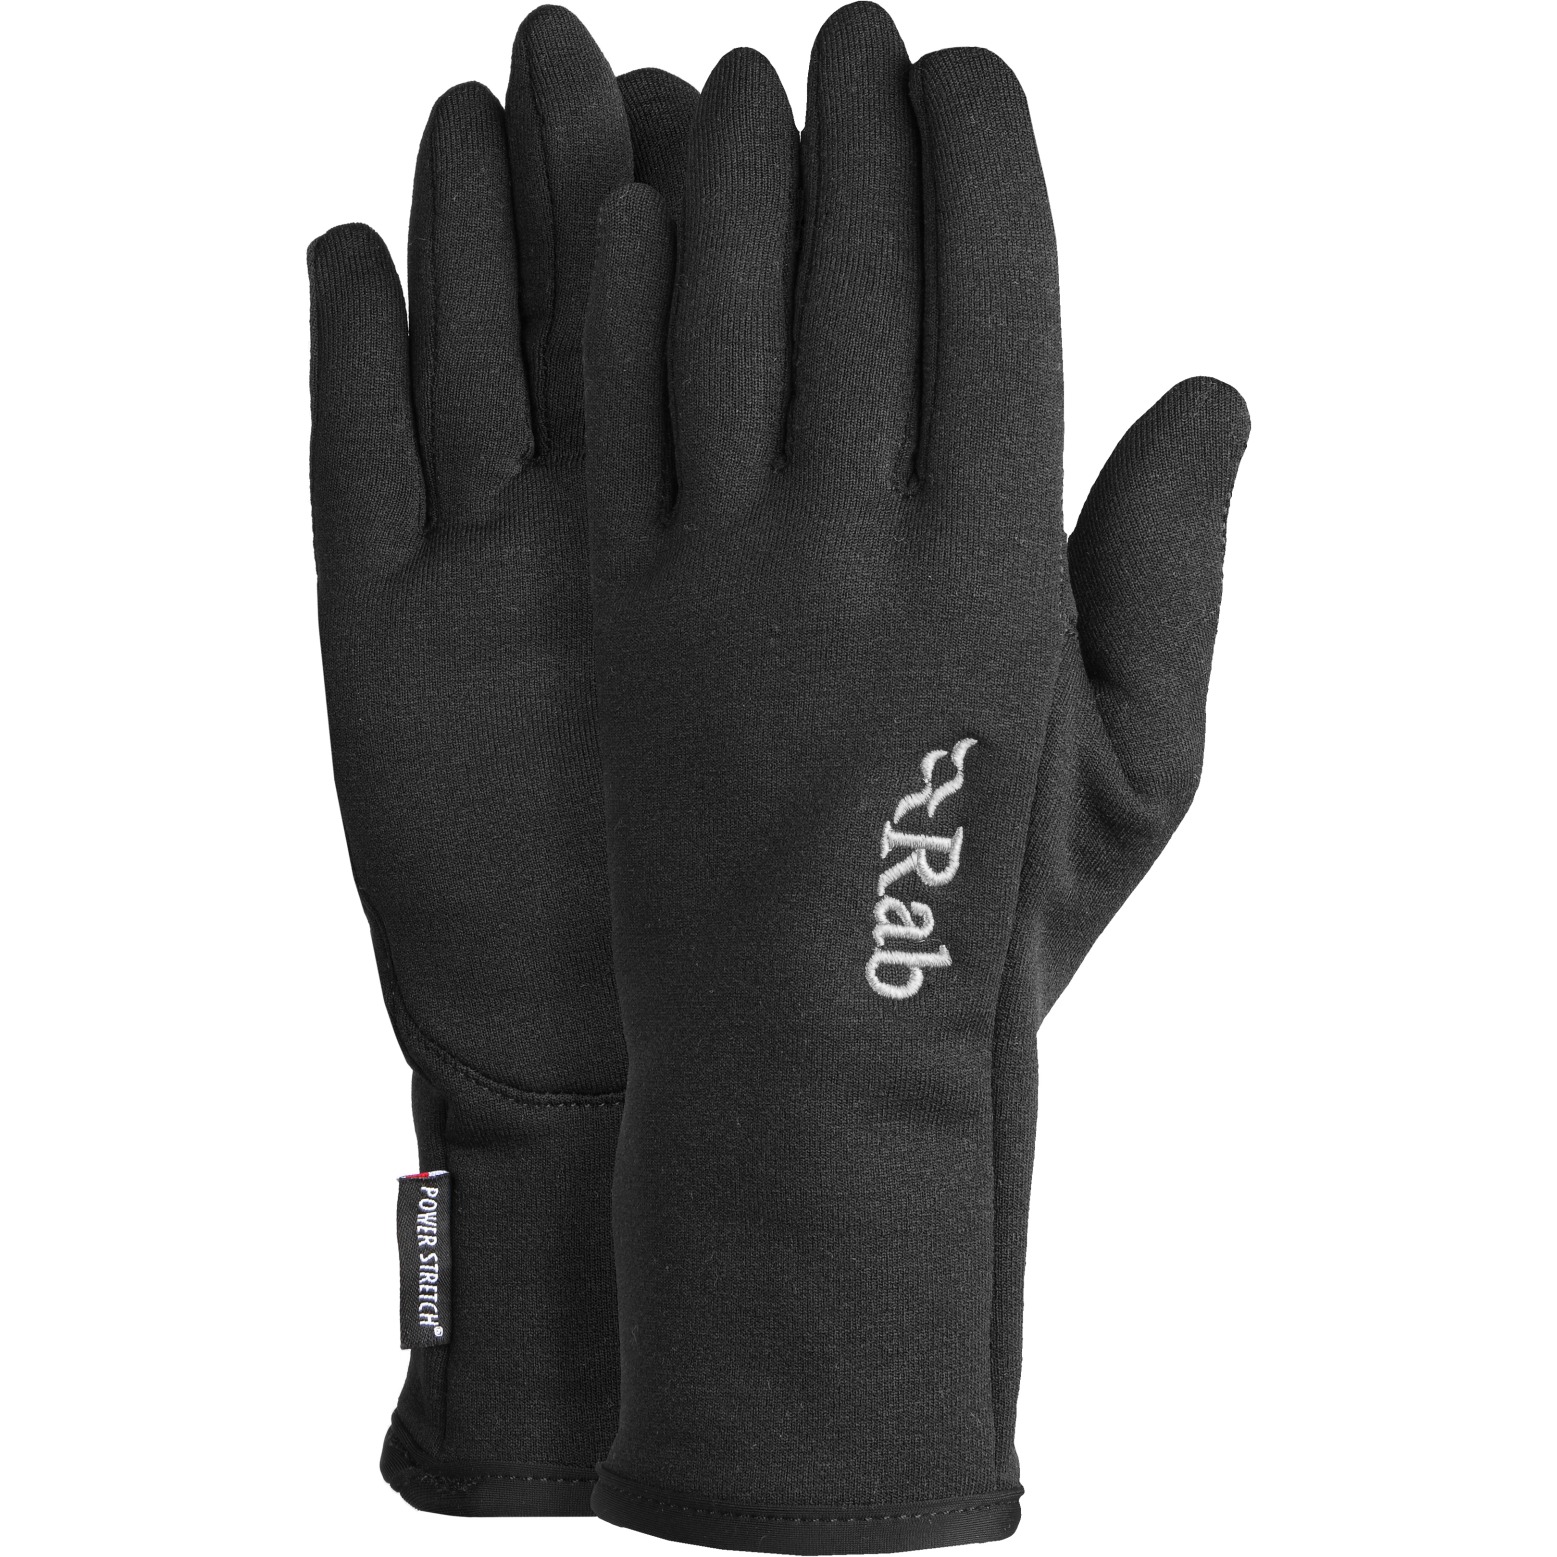 Produktbild von Rab Power Stretch Pro Handschuhe - schwarz